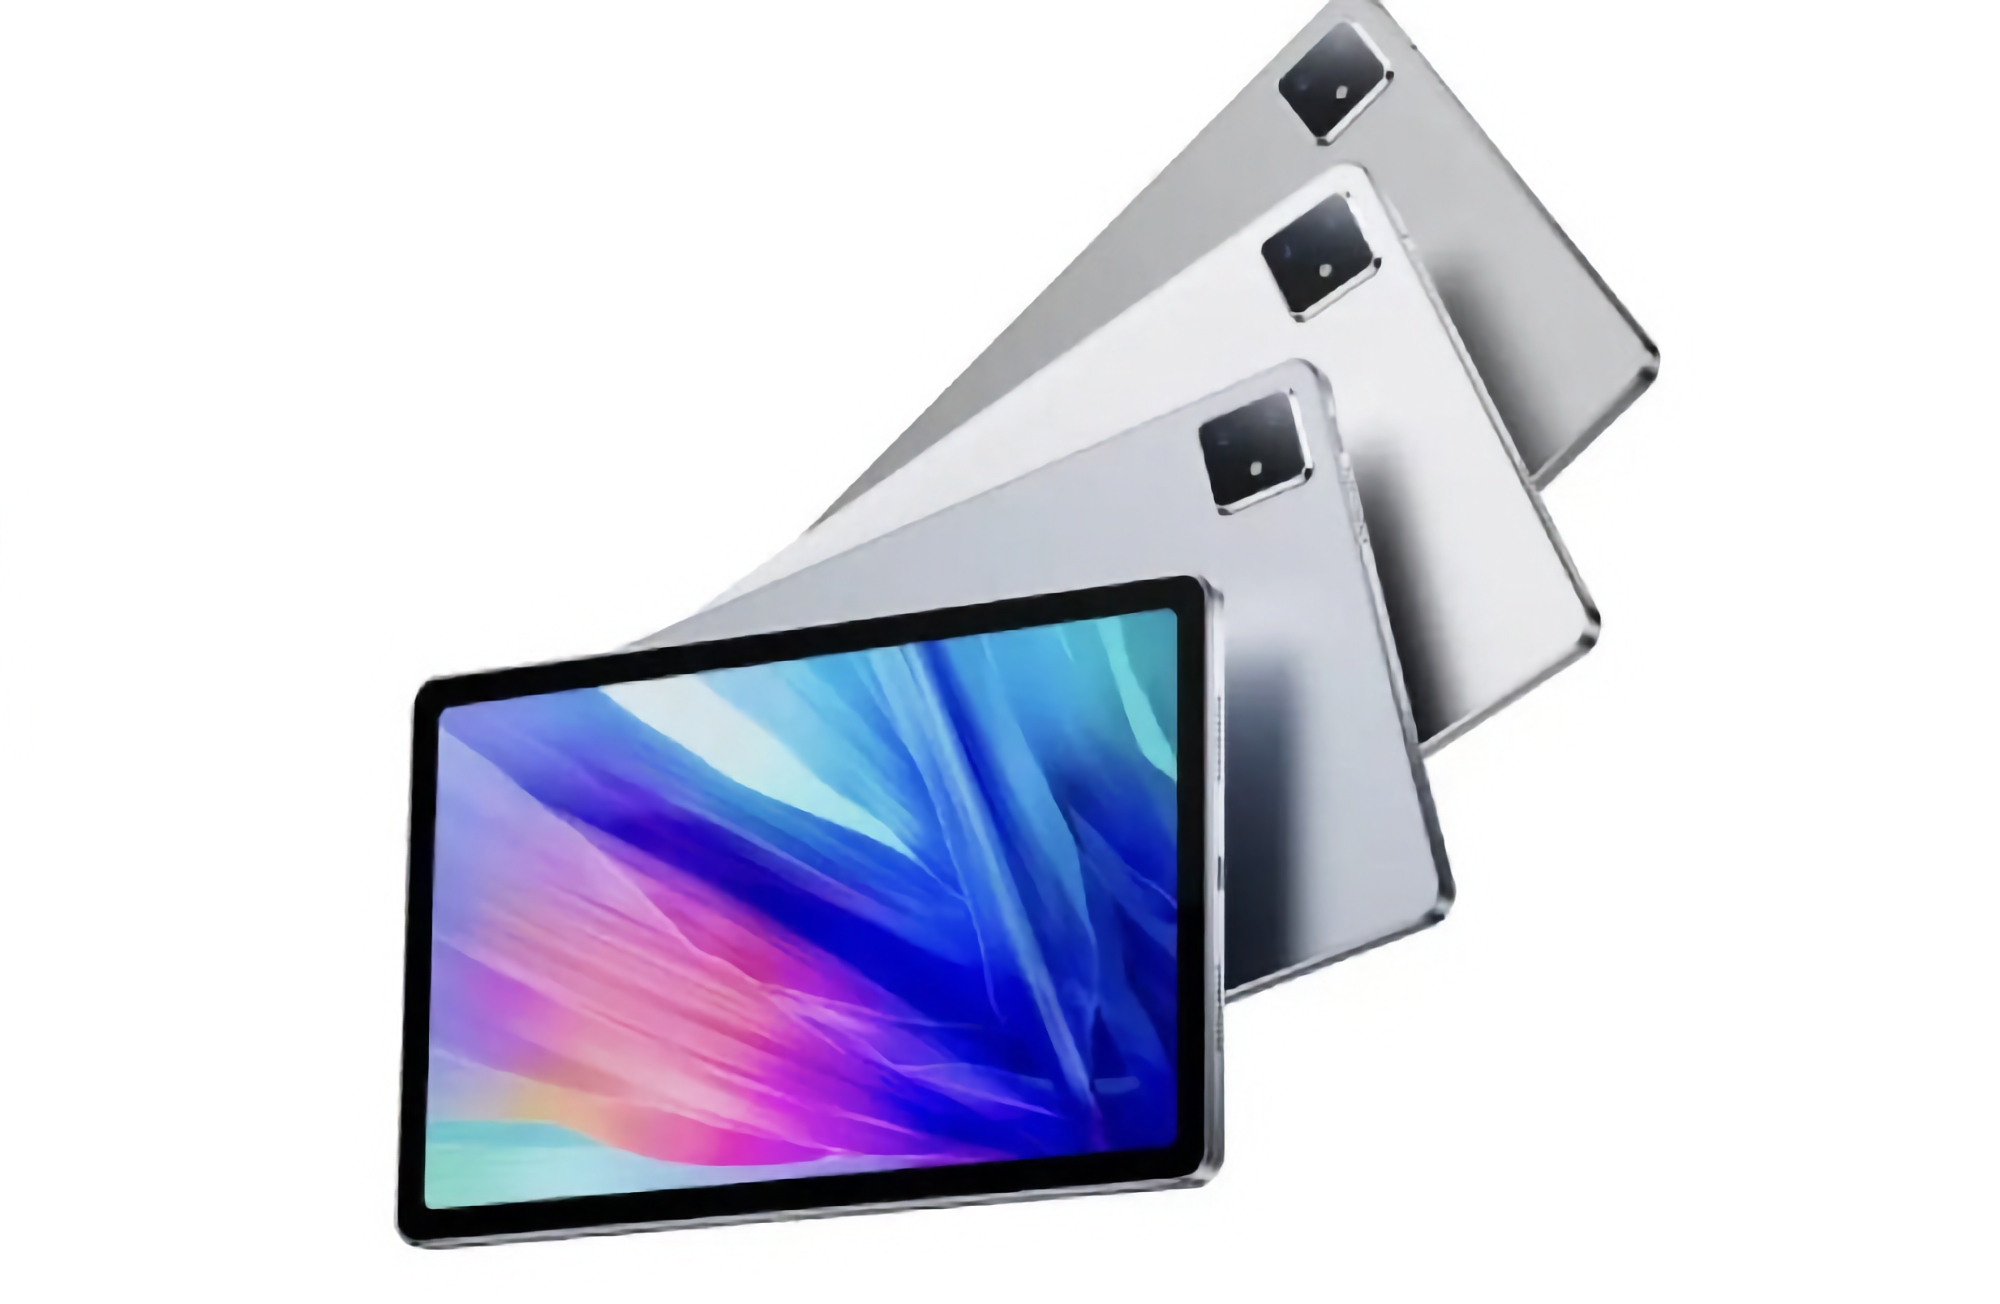 Lenovo M20 5G: tablet with MediaTek Kompanio 900T chip and 7200 mAh battery for $338